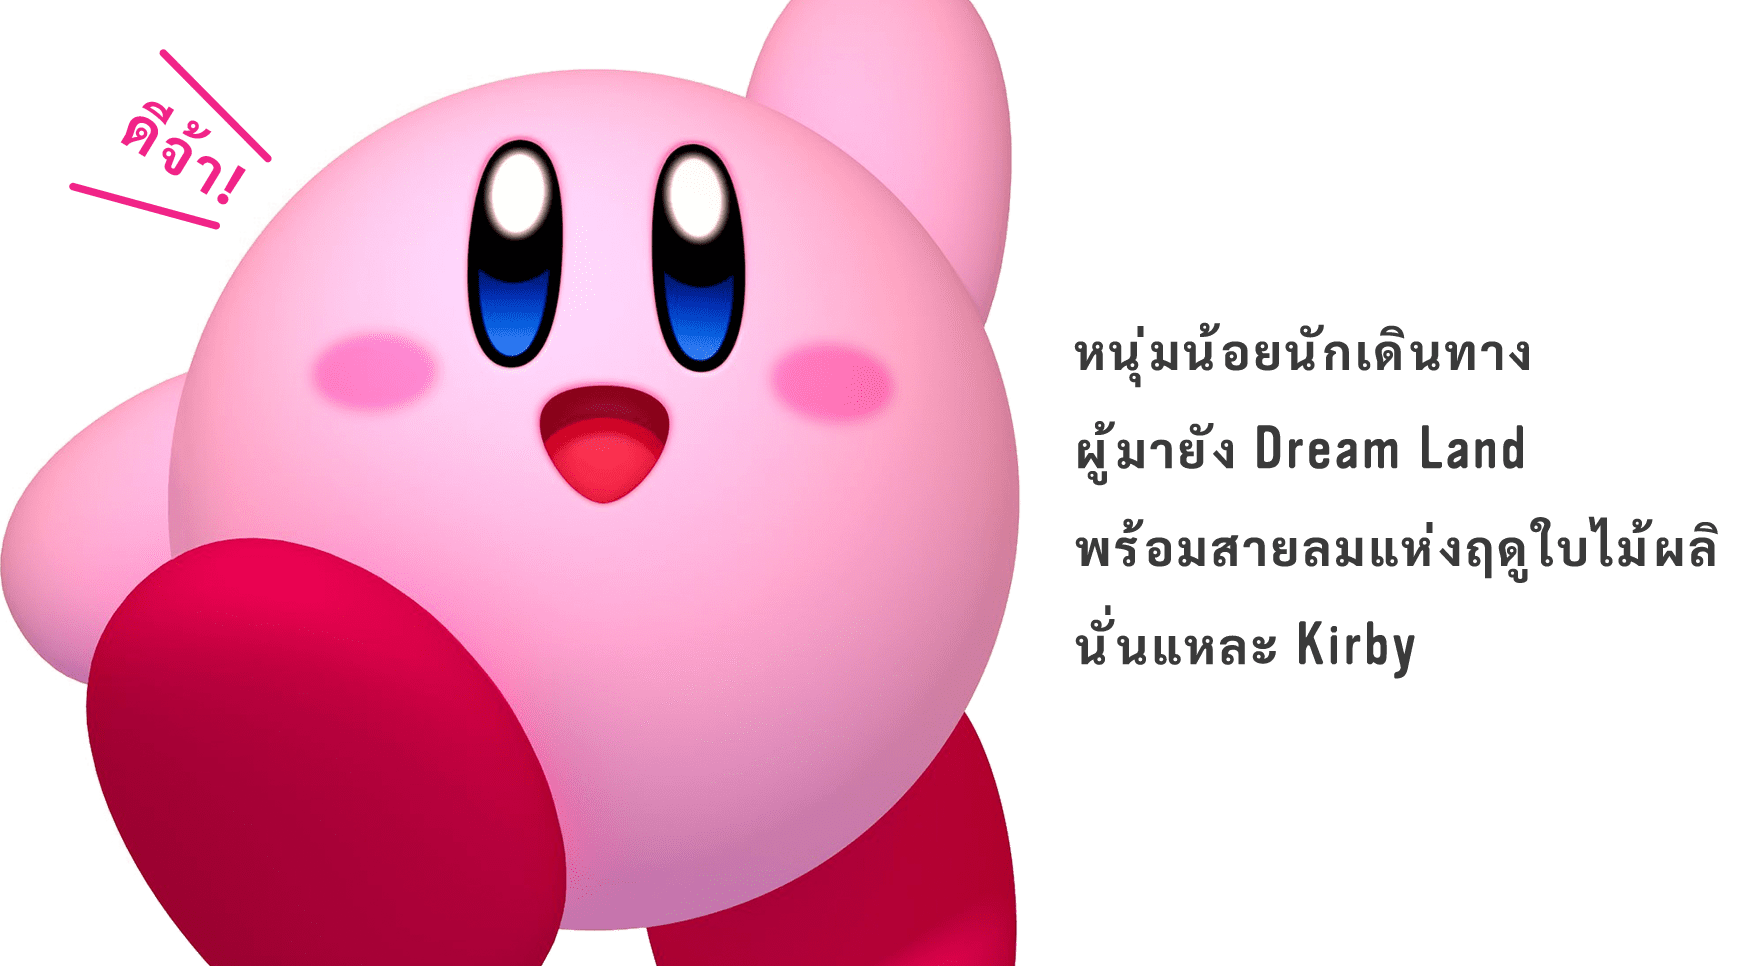 หนุ่มน้อยนักเดินทาง ผู้มายัง Dream Land พร้อมสายลมแห่งฤดูใบไม้ผลิ นั่นแหละ Kirby